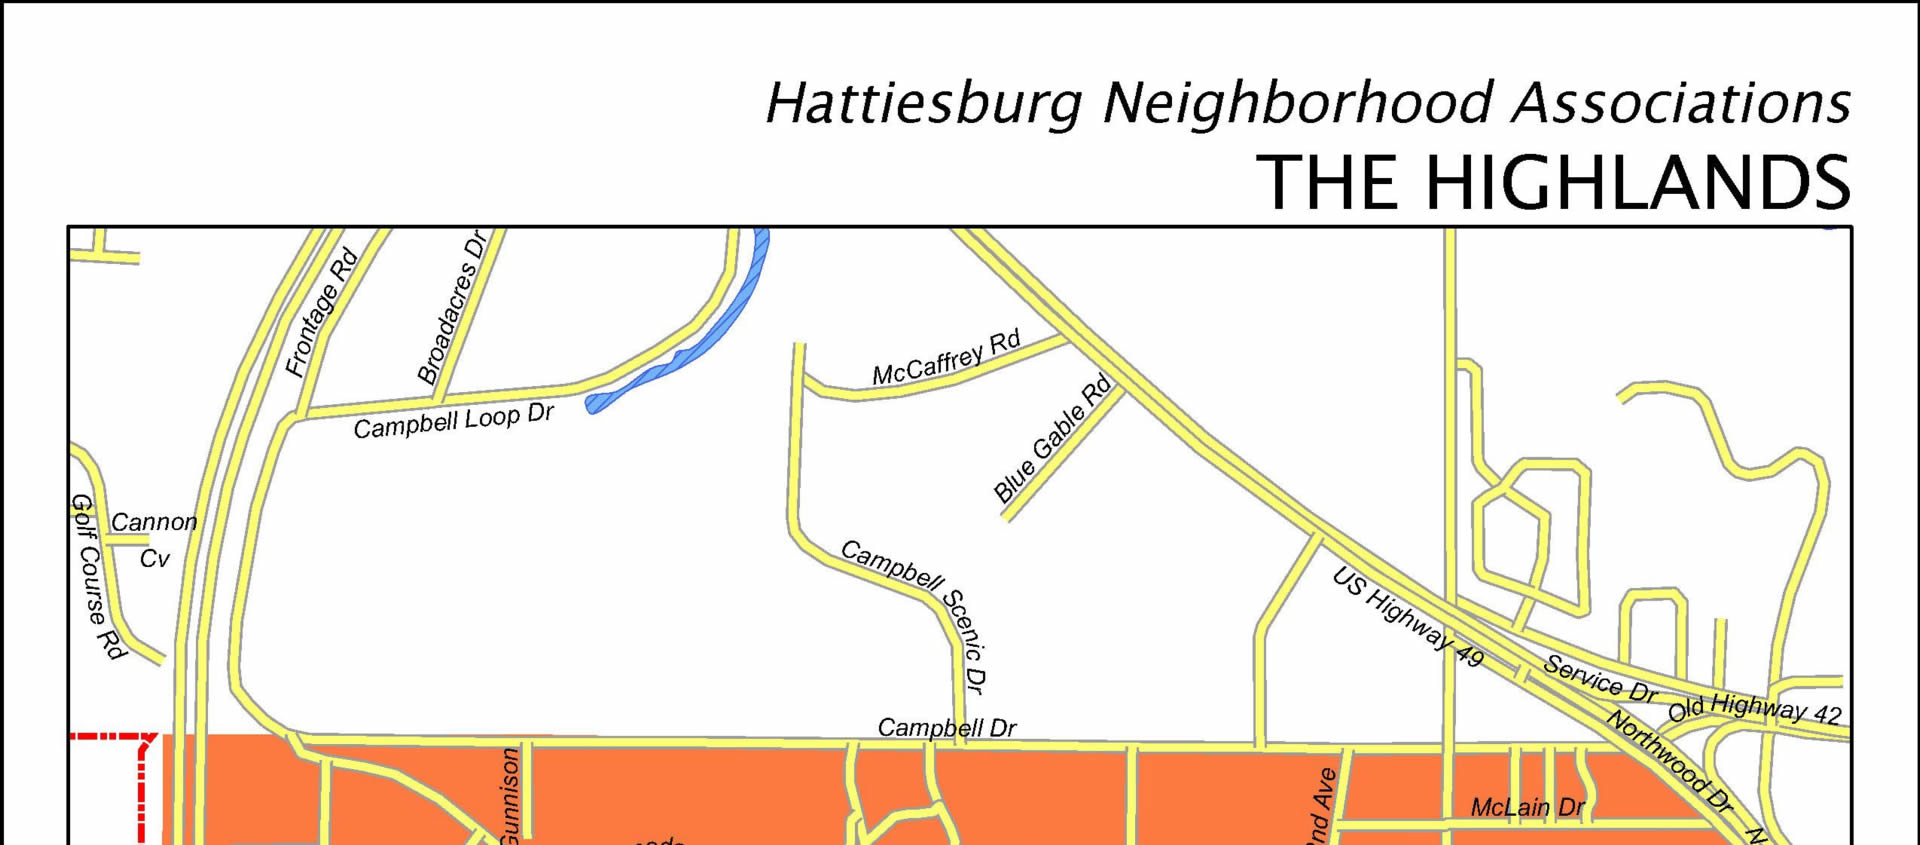 City of Hattiesburg